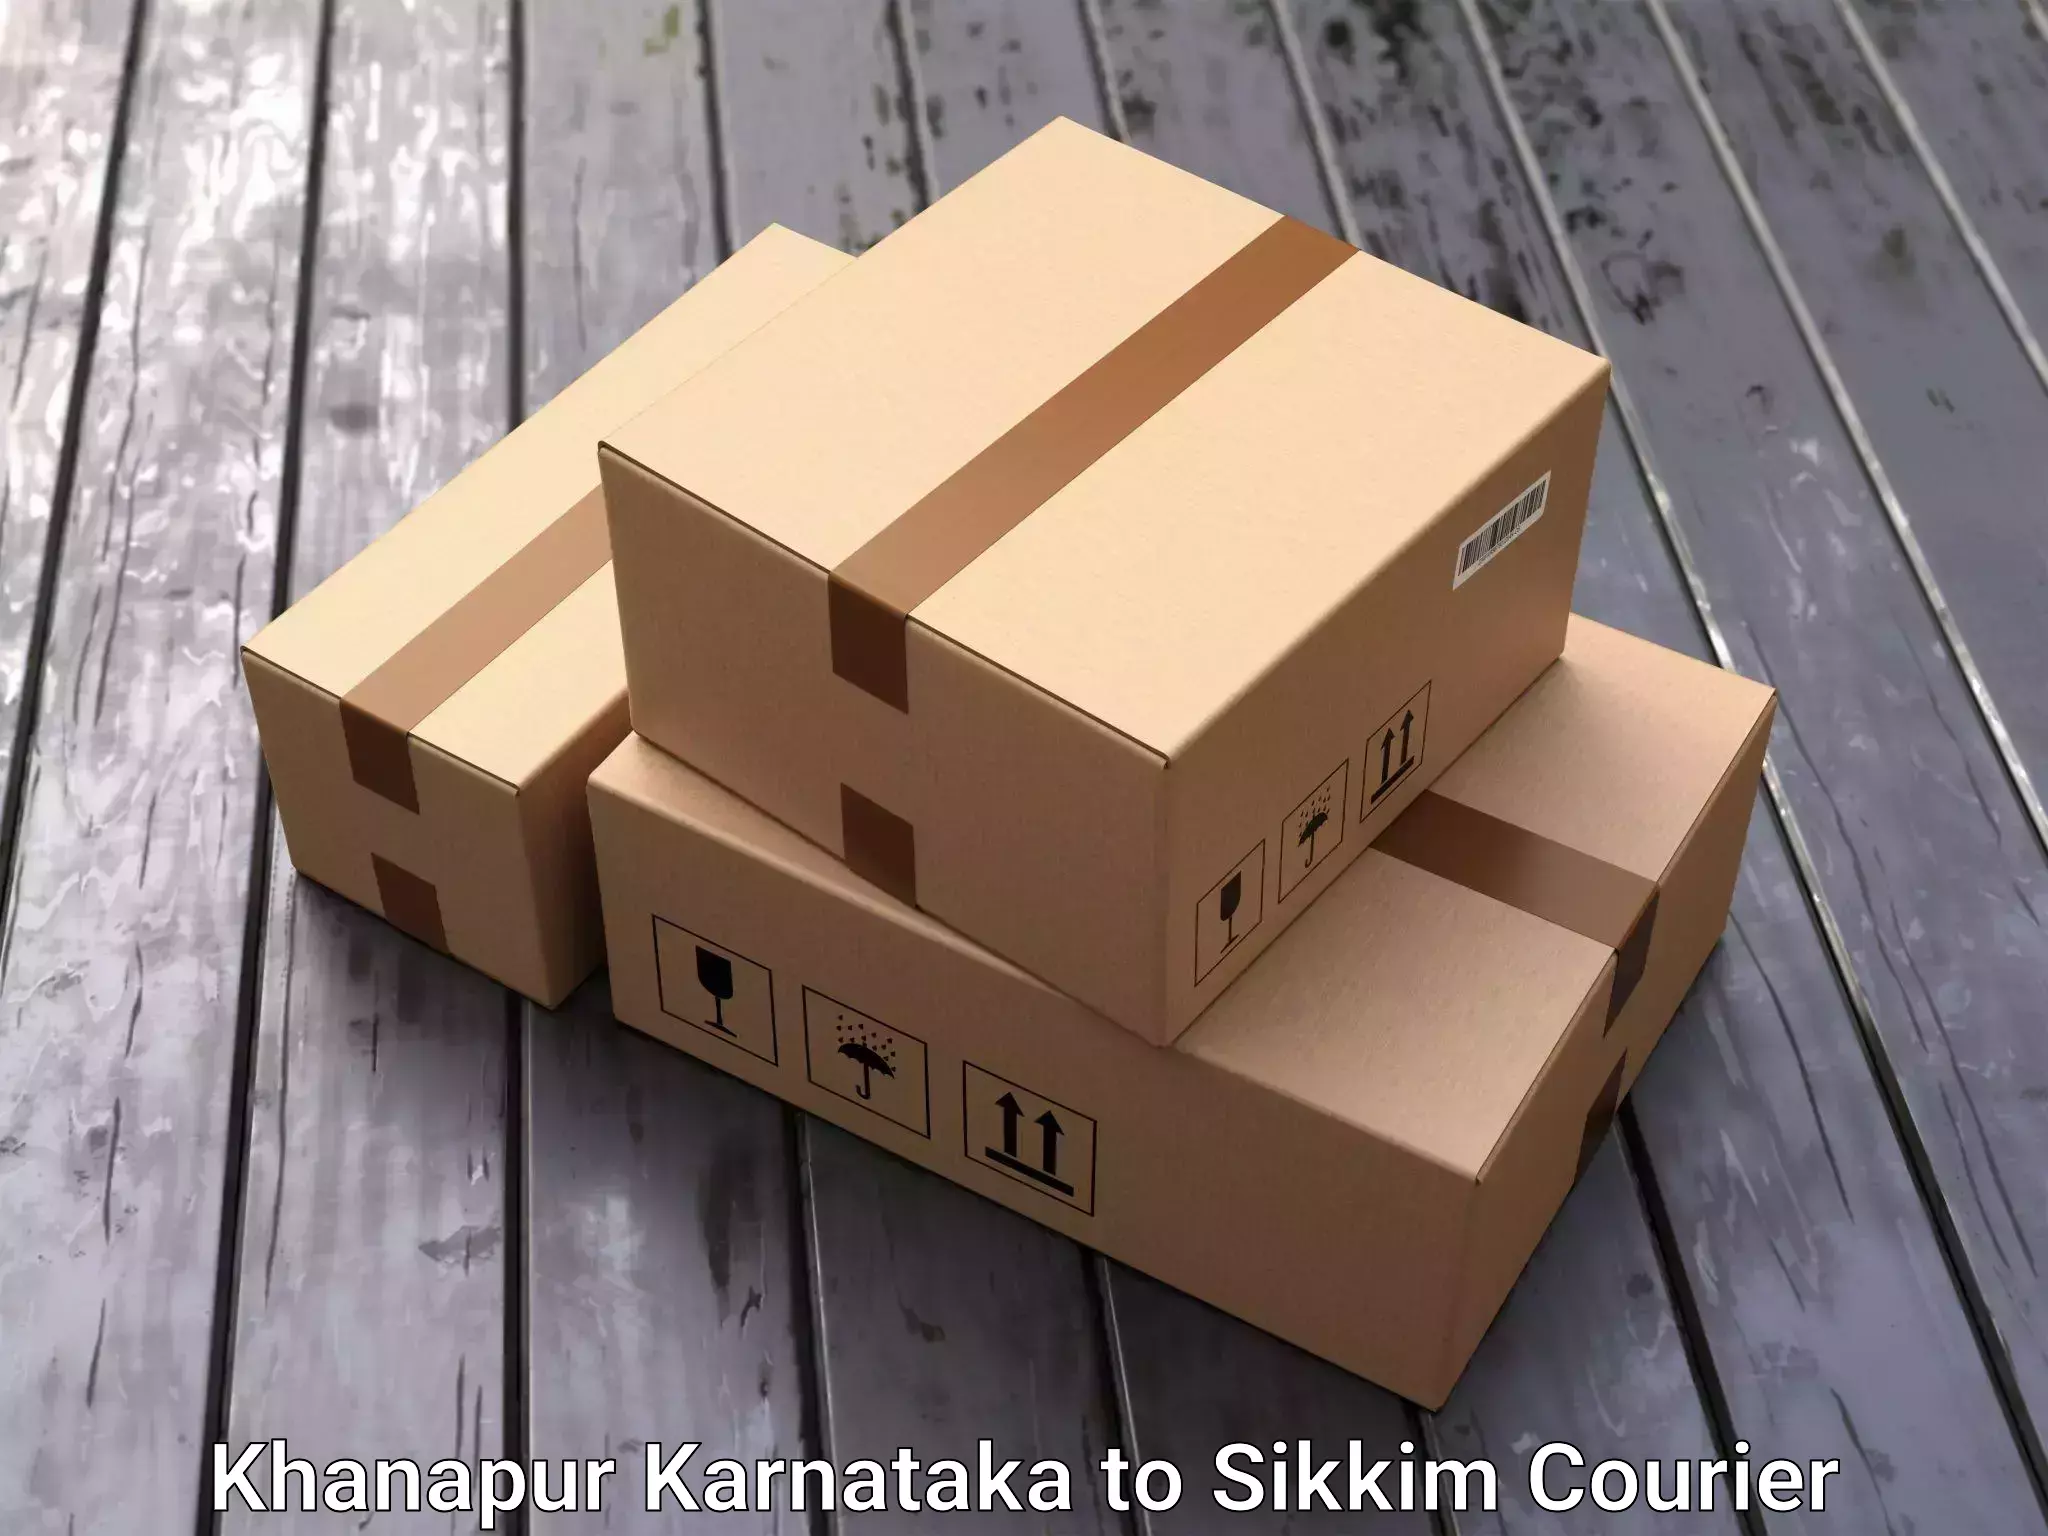 Professional packing services Khanapur Karnataka to Jorethang